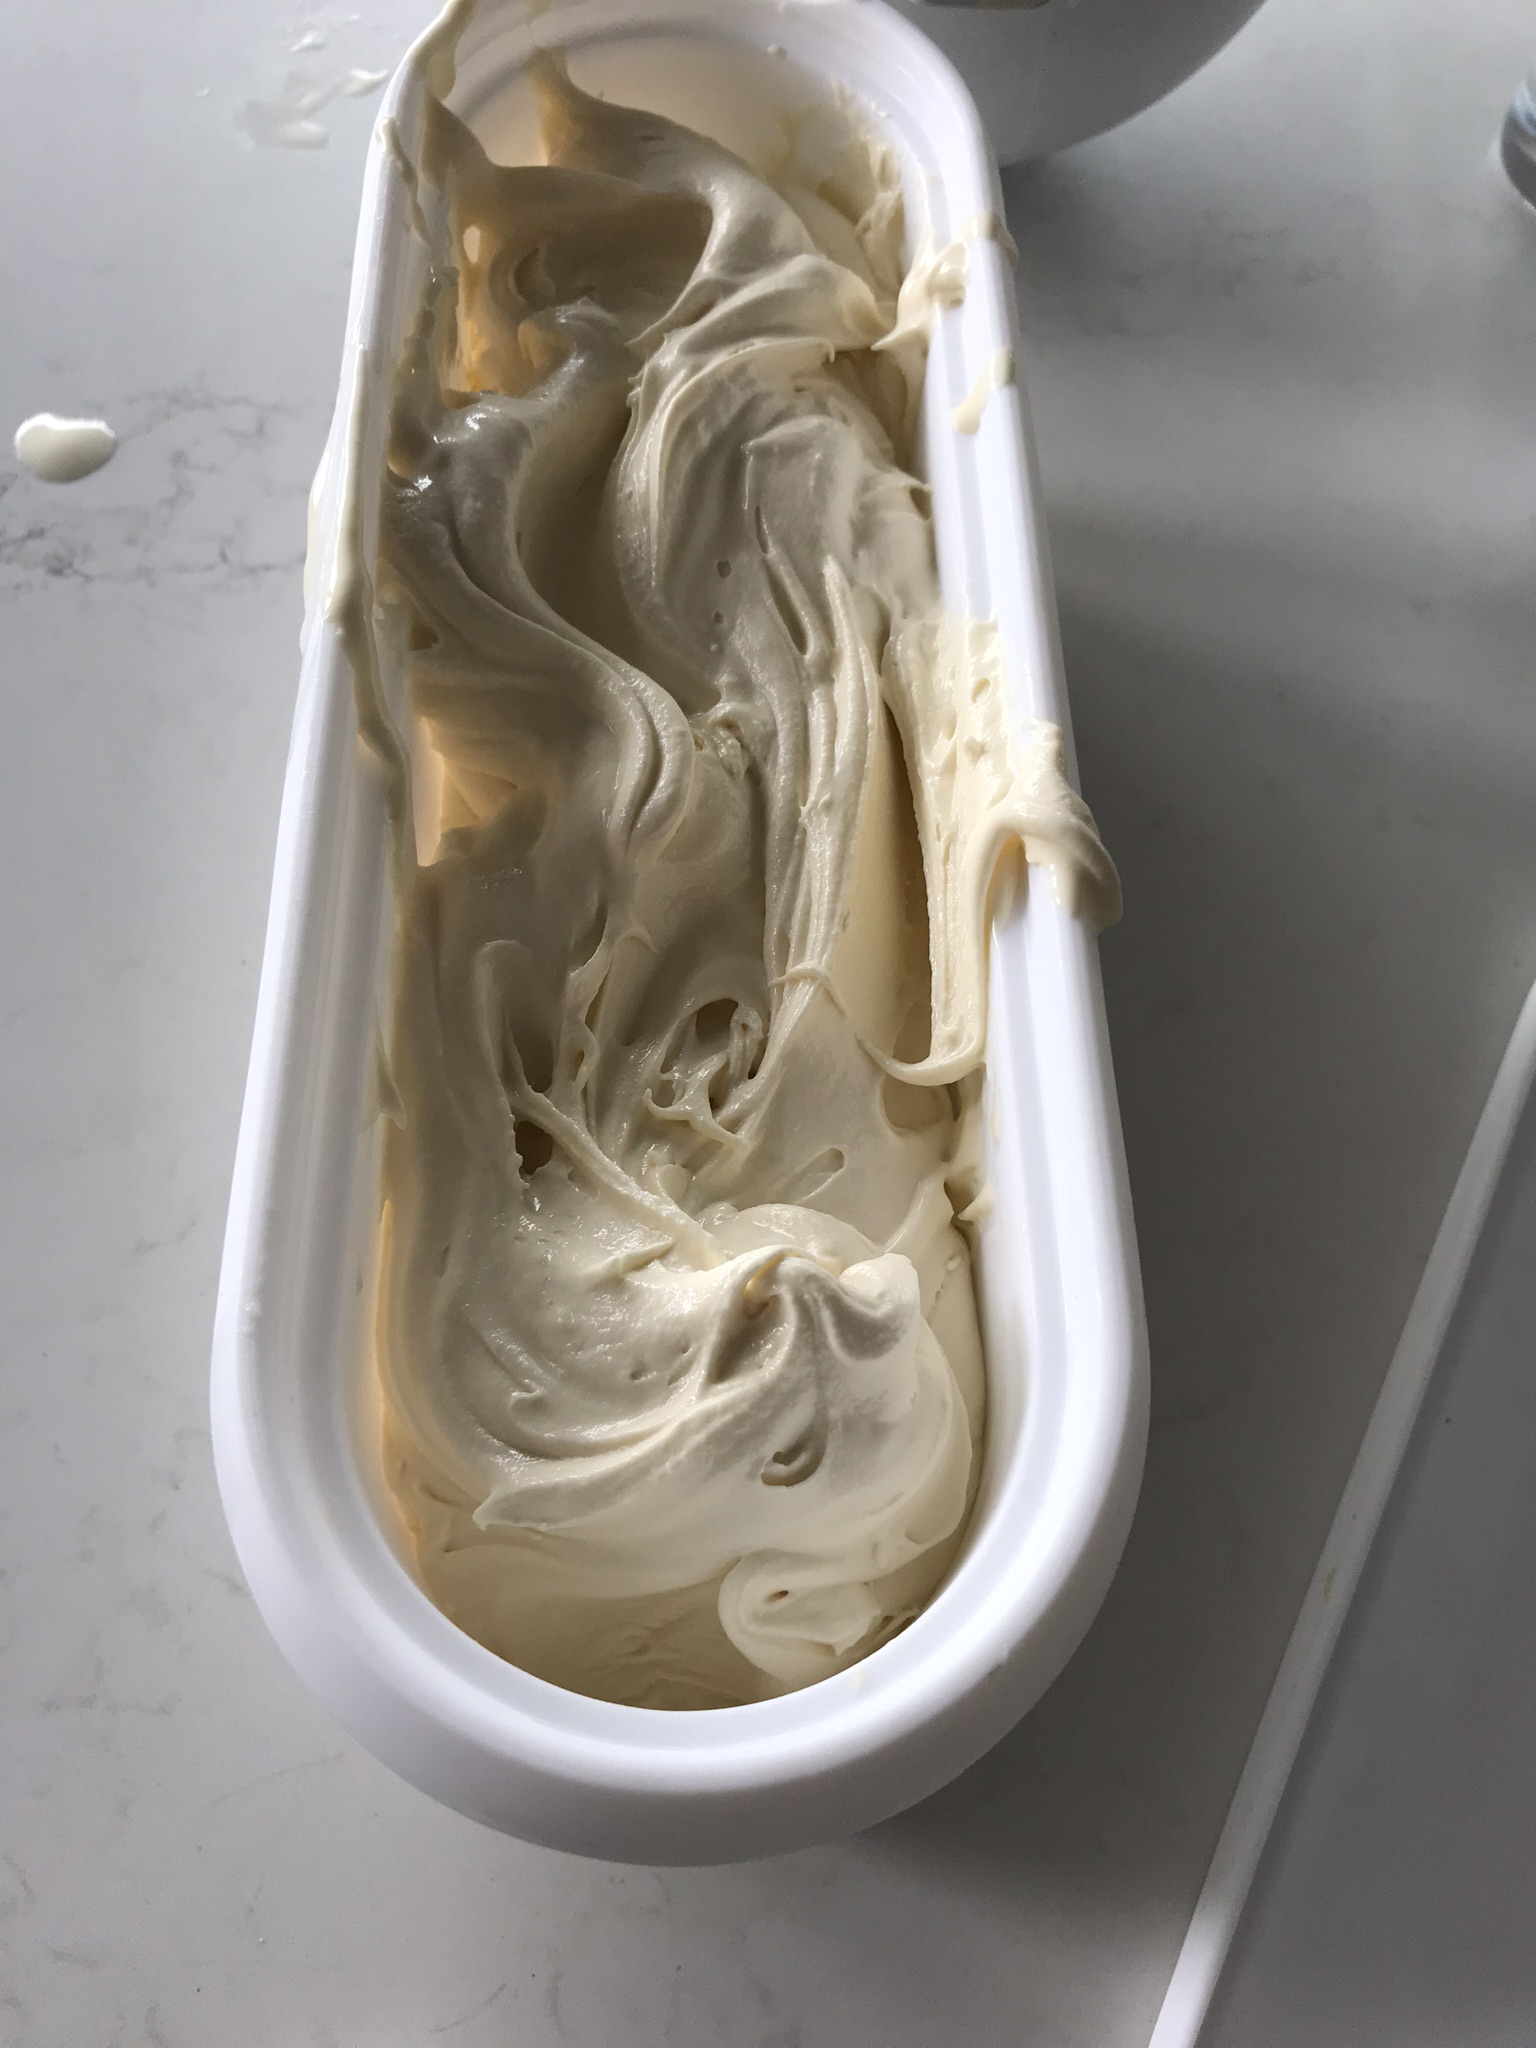 Roasted Marshmallow Ice Cream